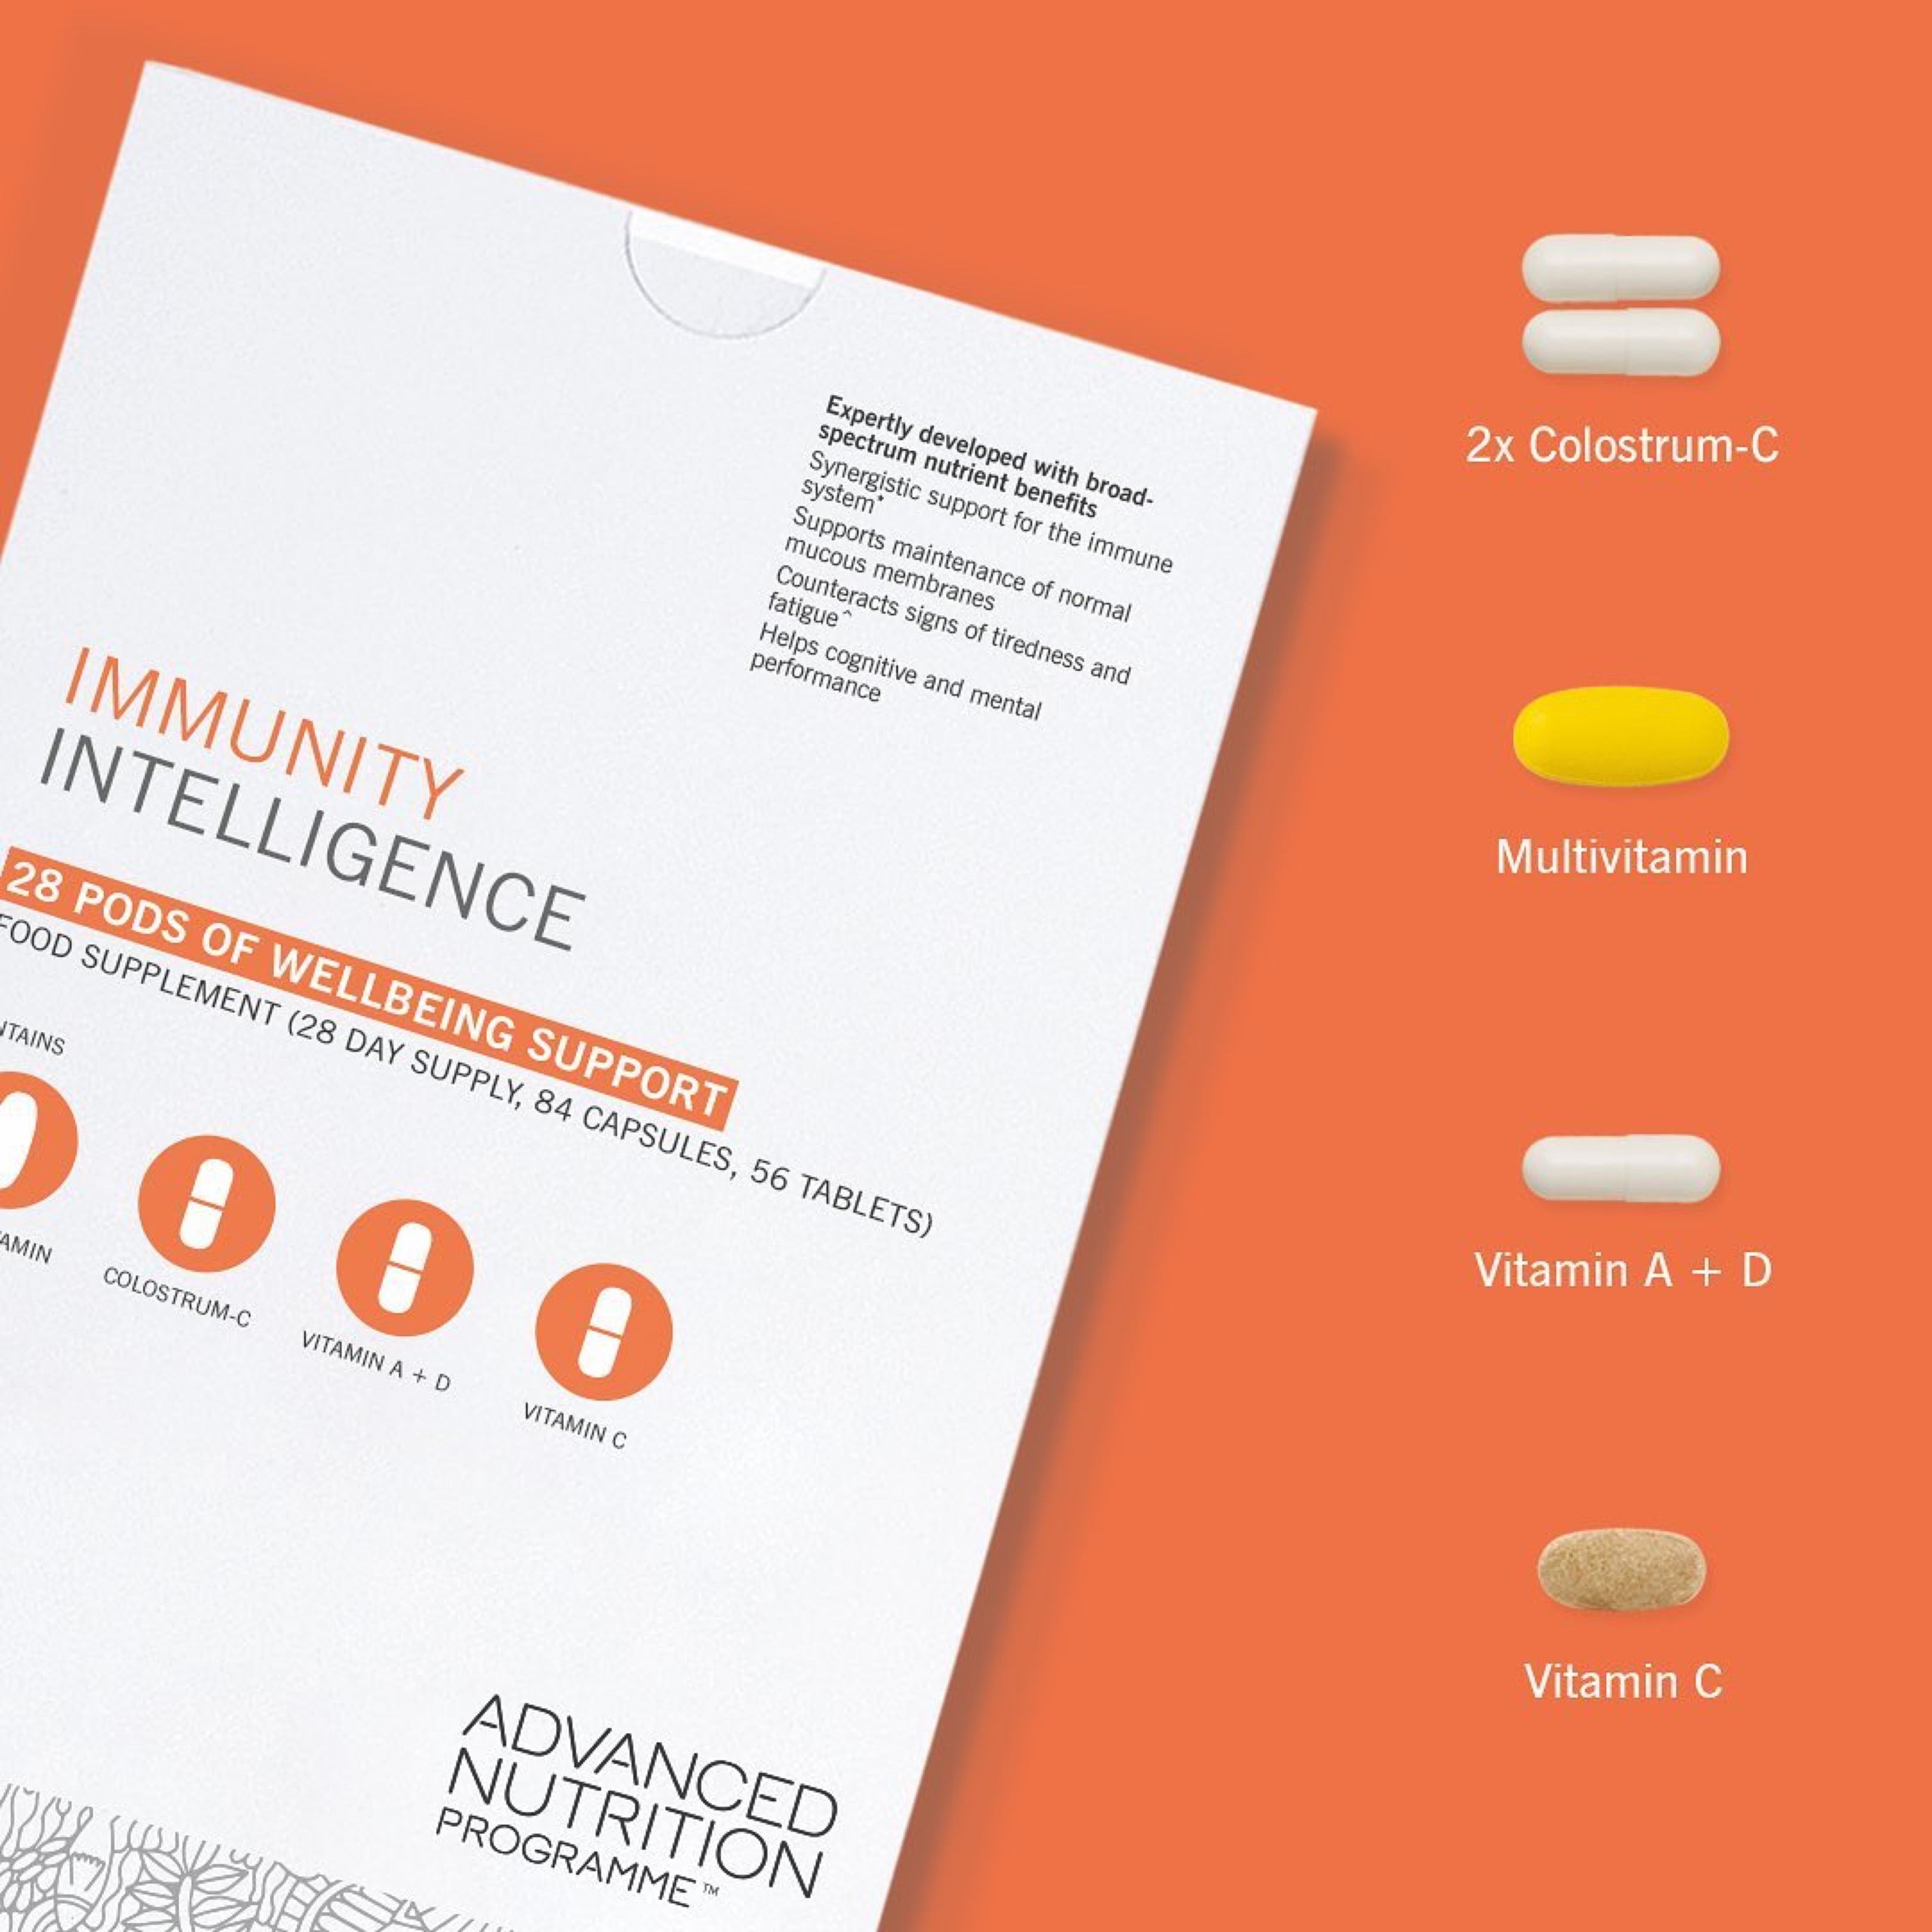 Immunity Intelligence (28 Day Supply)